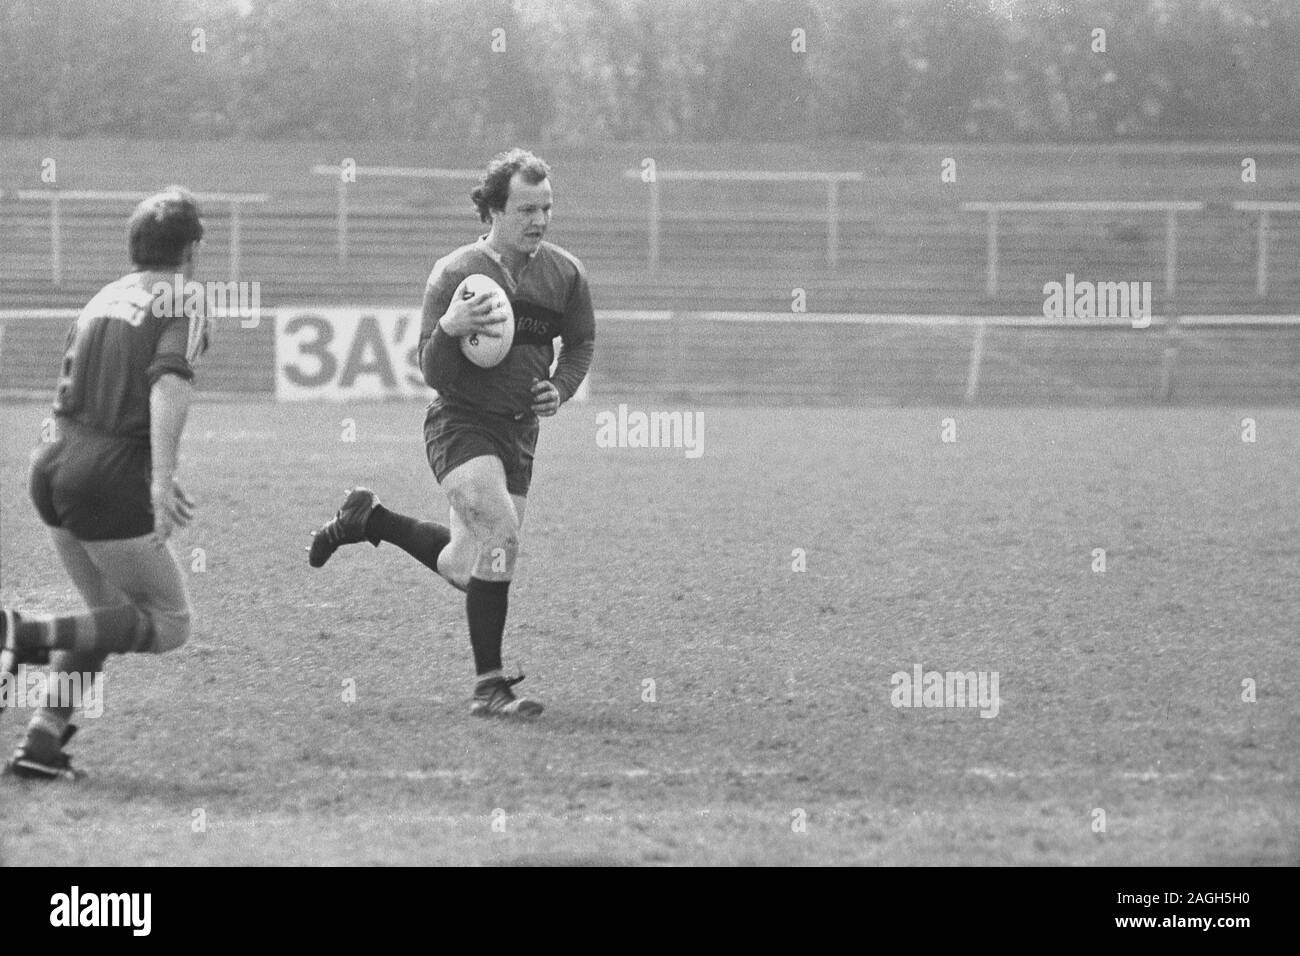 1980, un joueur de rugby masculin historique qui pratique un ballon de rugby en dehors sur un terrain, Angleterre, Royaume-Uni. Banque D'Images